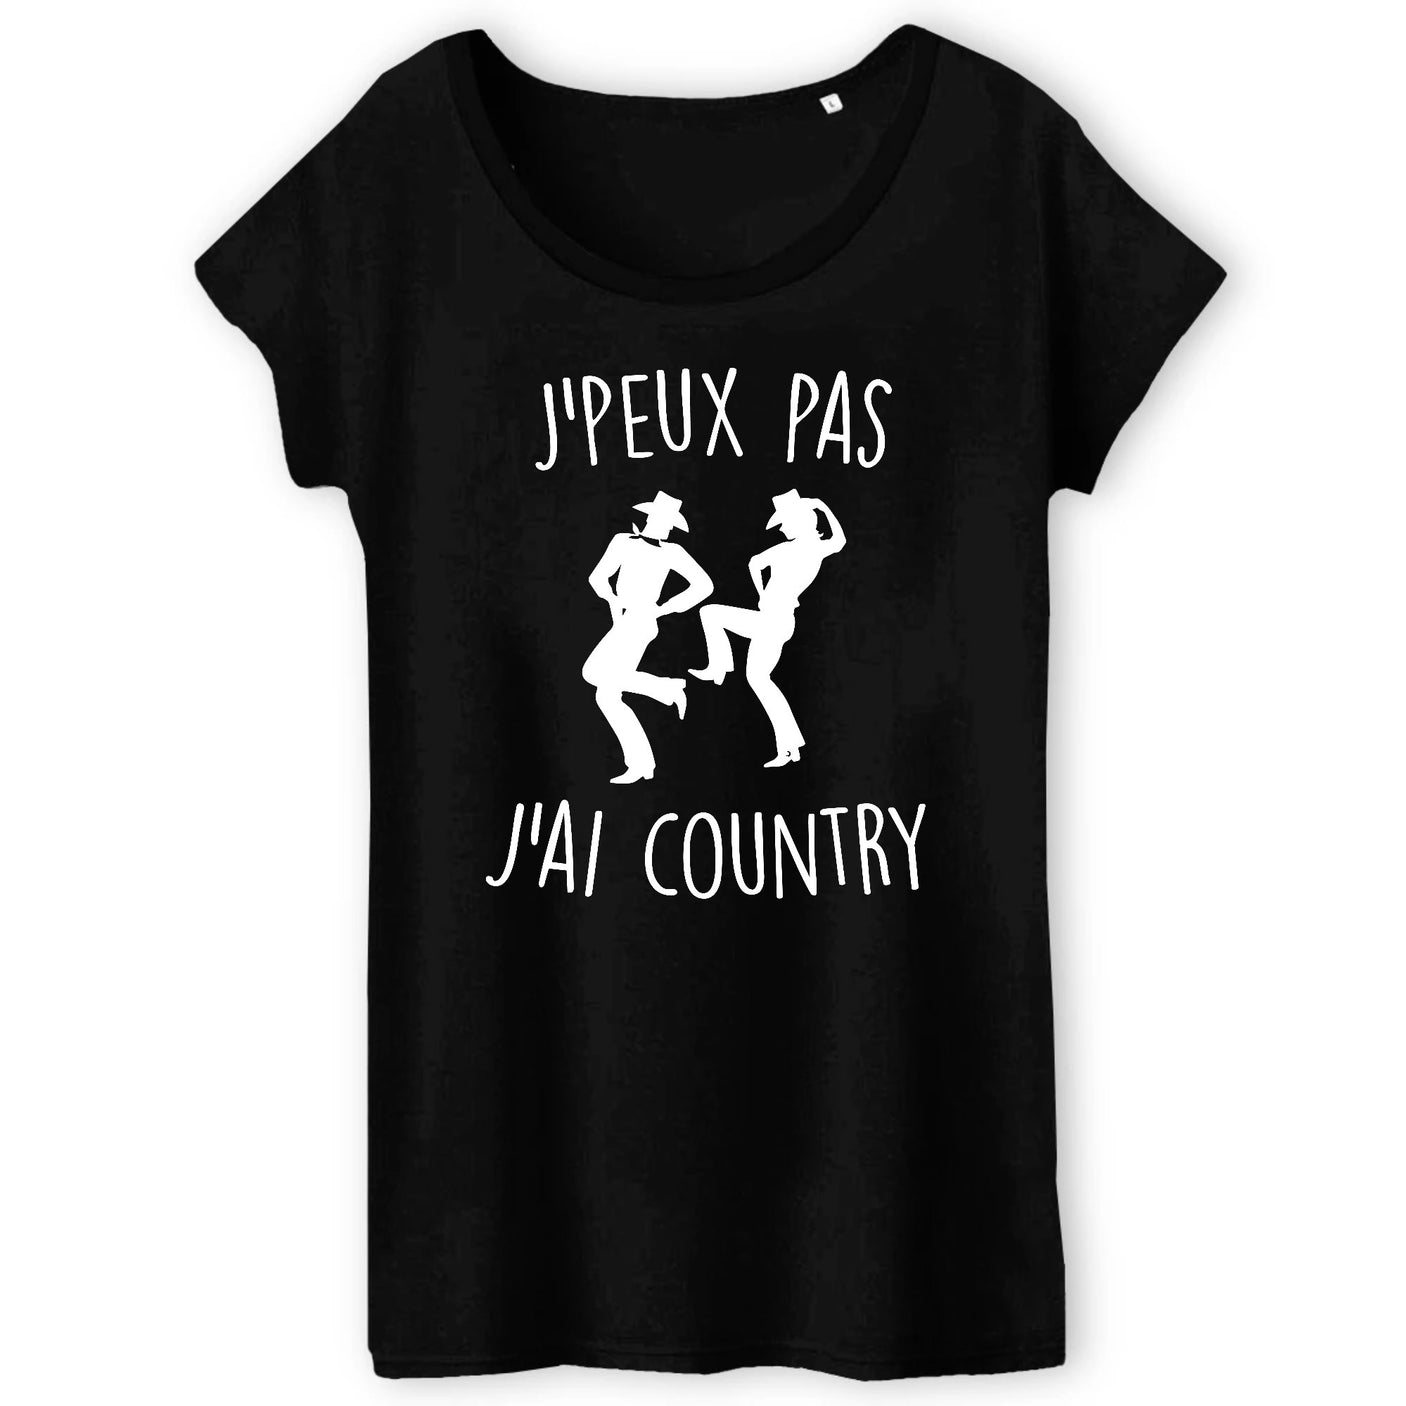 T-Shirt Femme J'peux pas j'ai country 